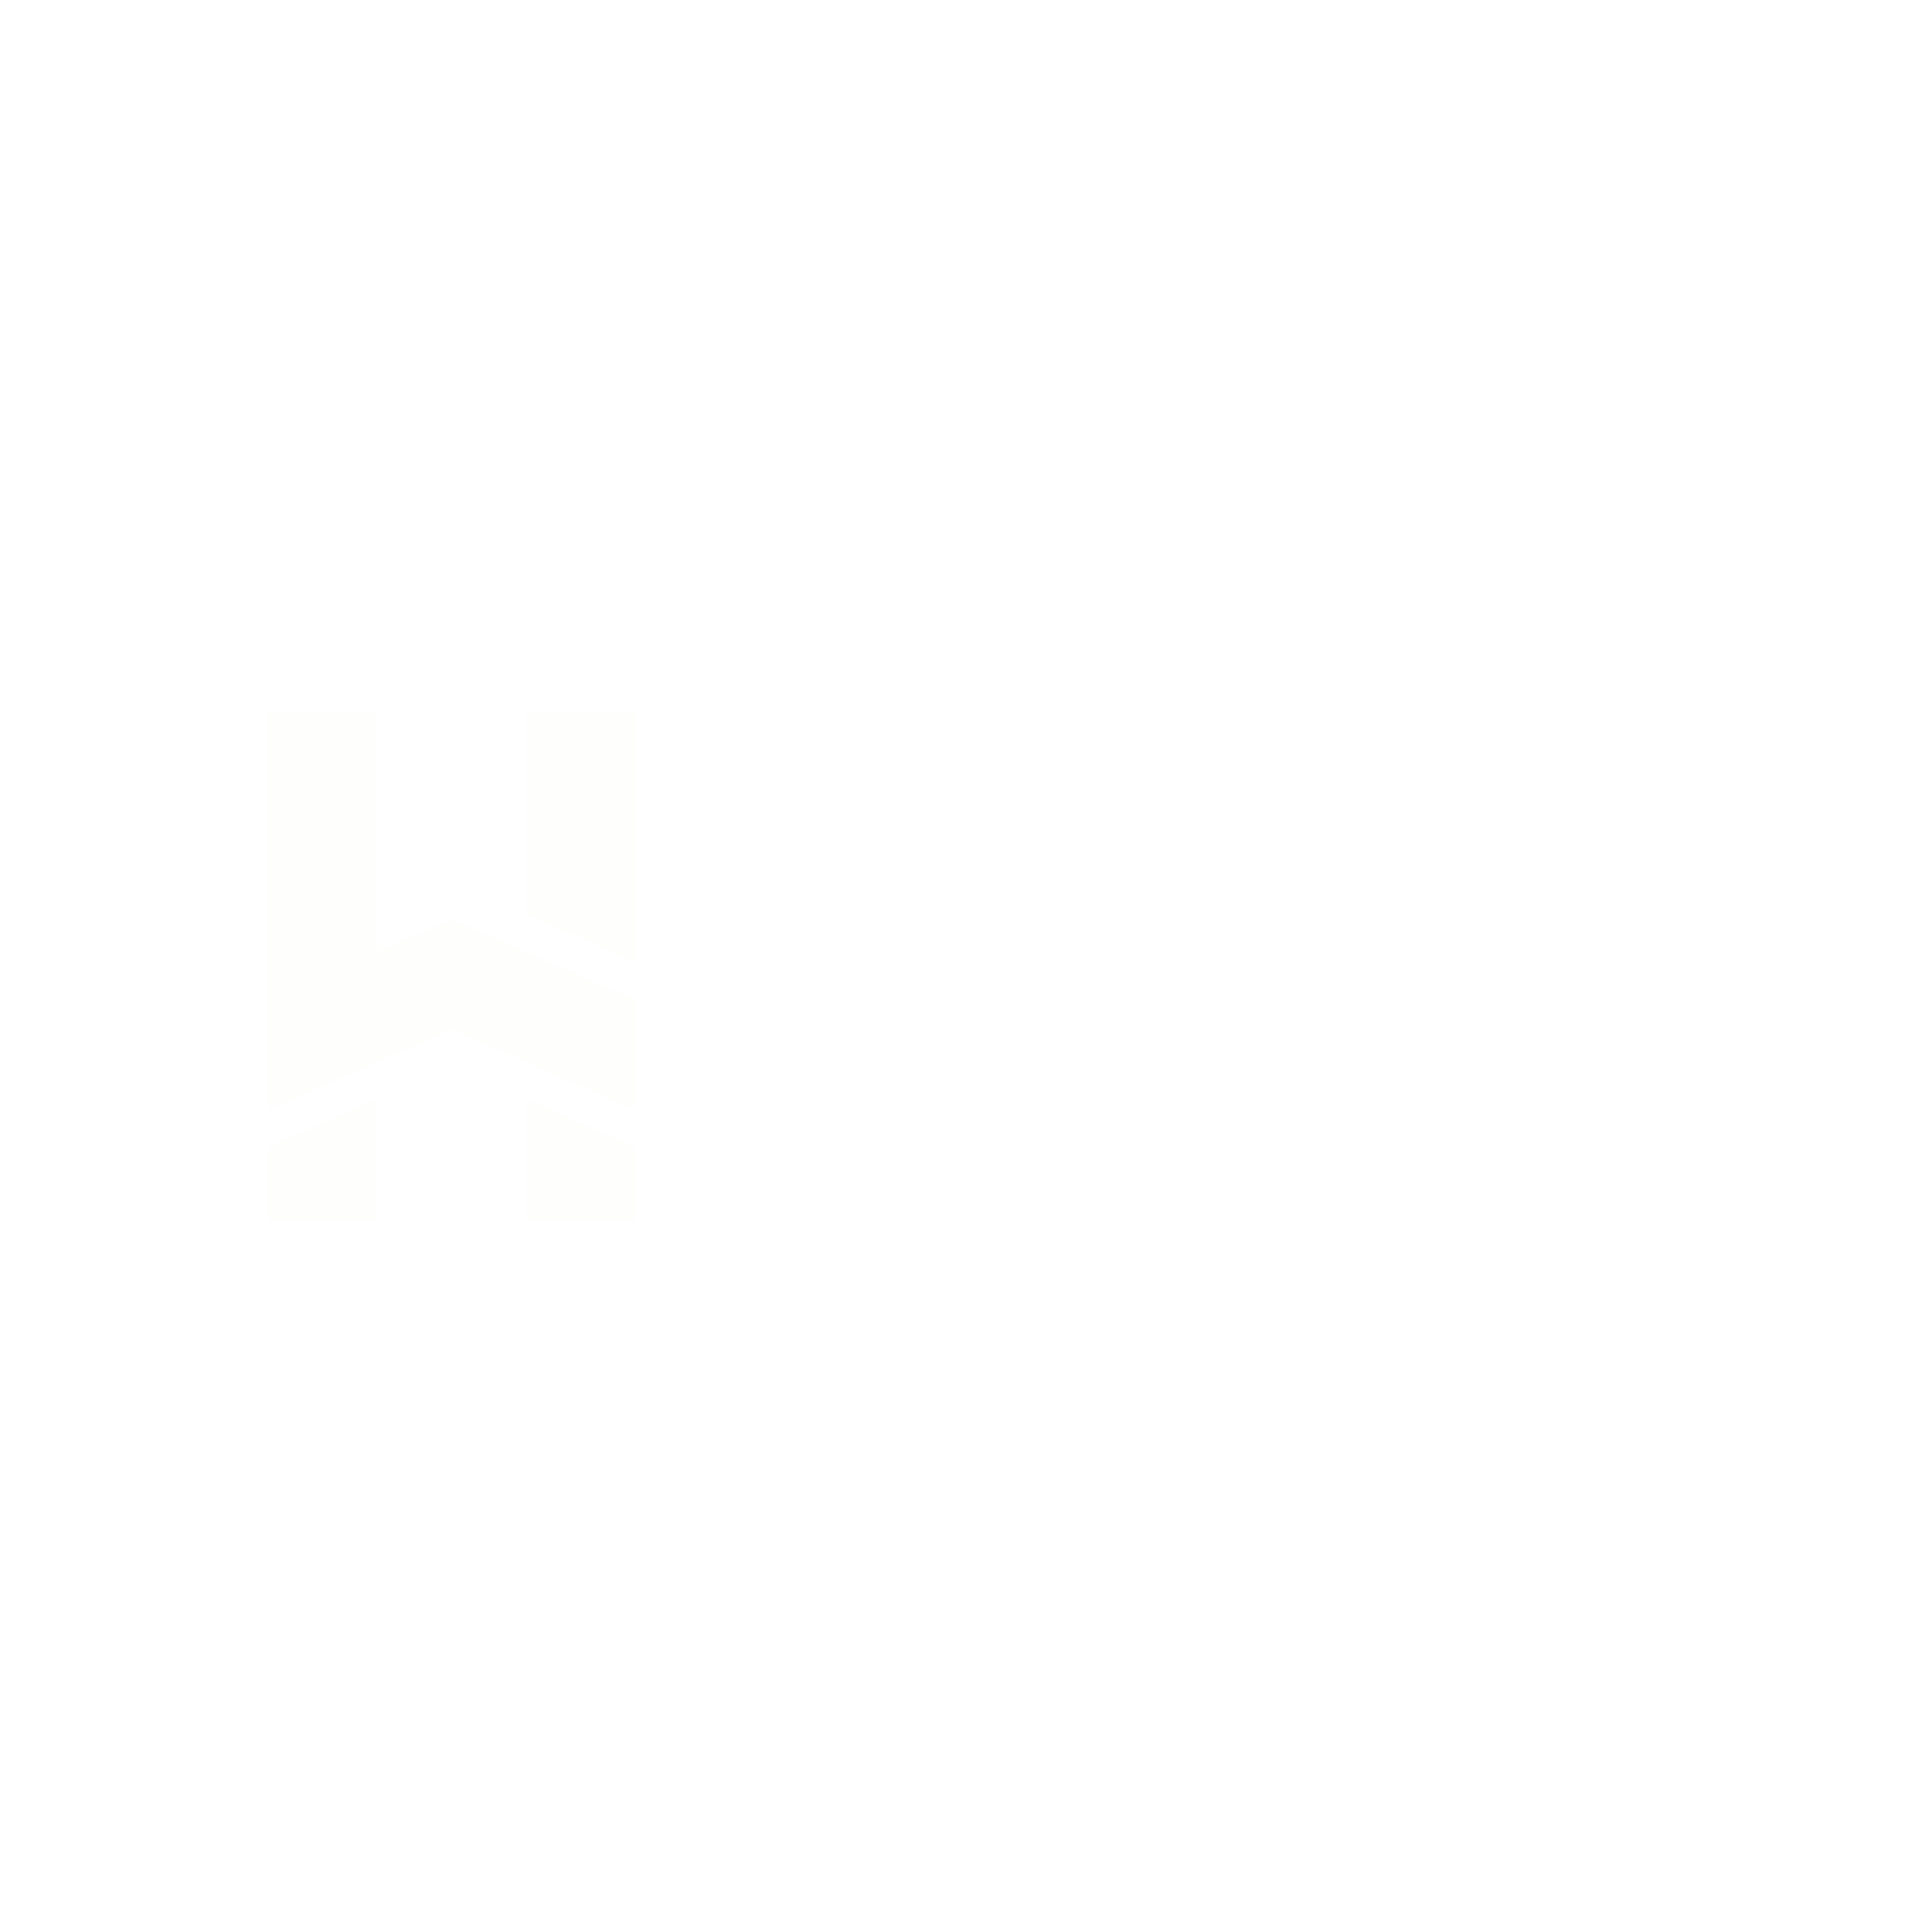 Live House